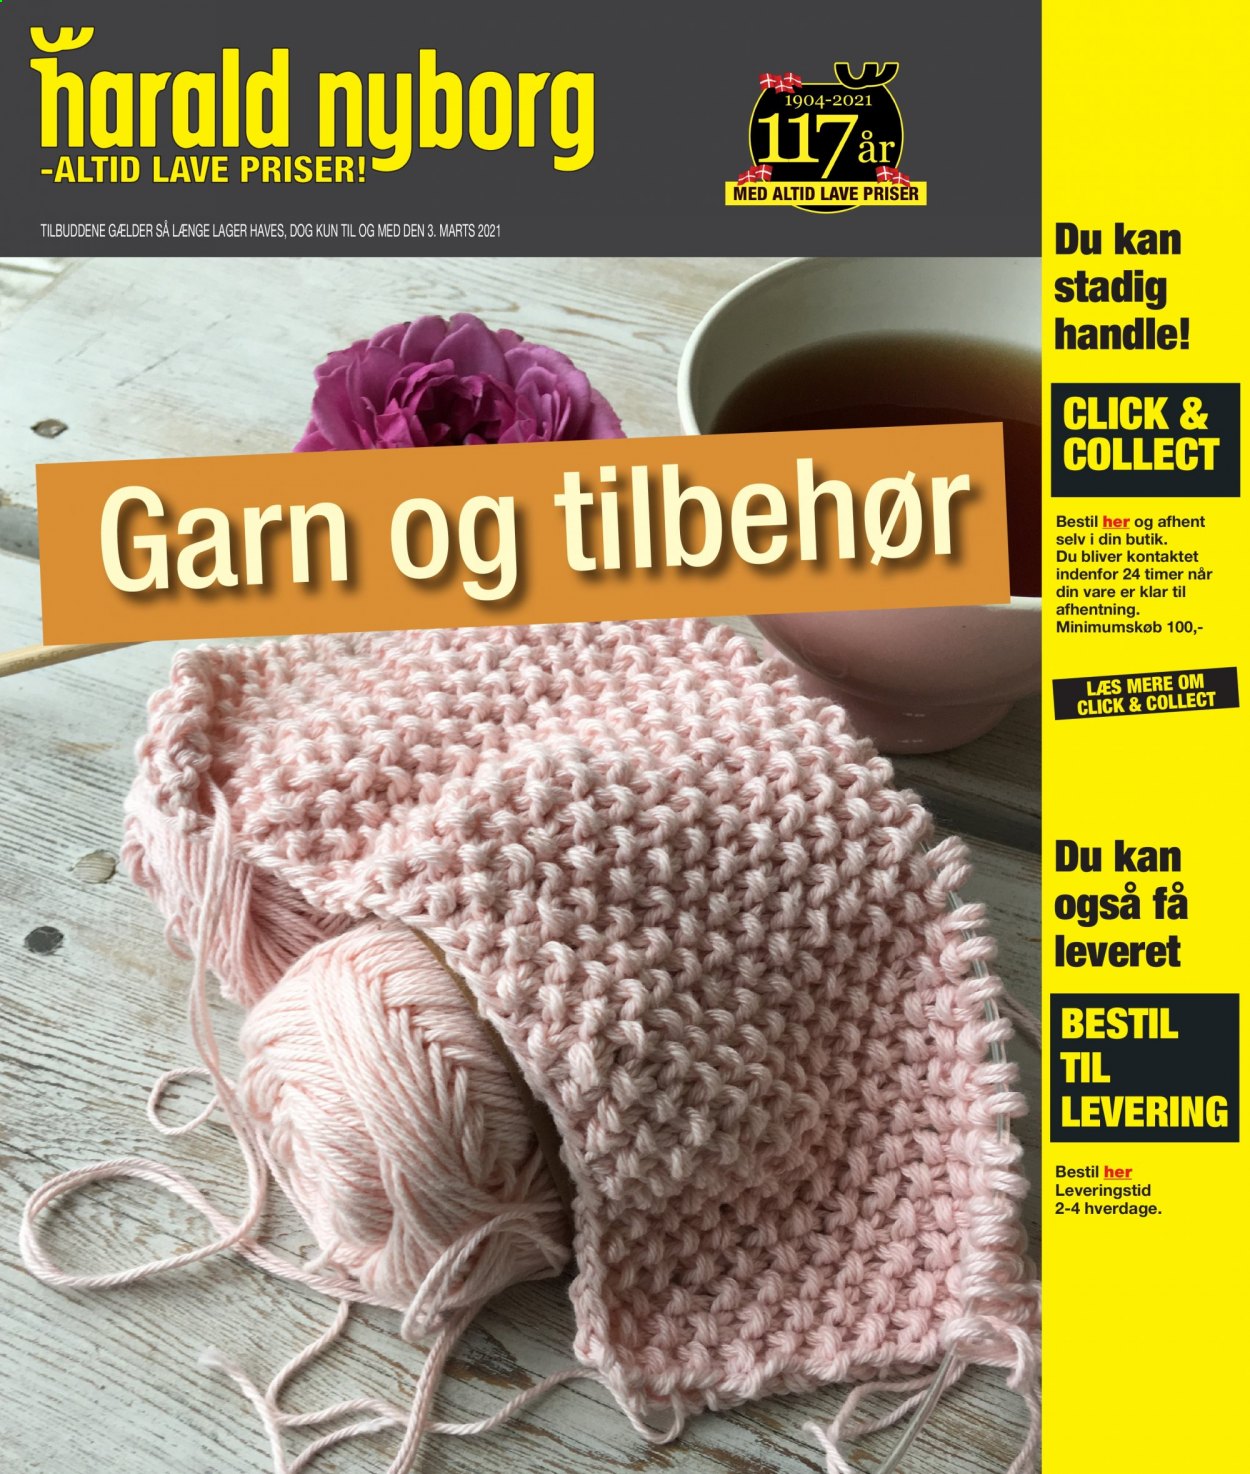 Harald Nyborg tilbudsavis  - 03.02.2021 - 03.03.2021. Side 1.